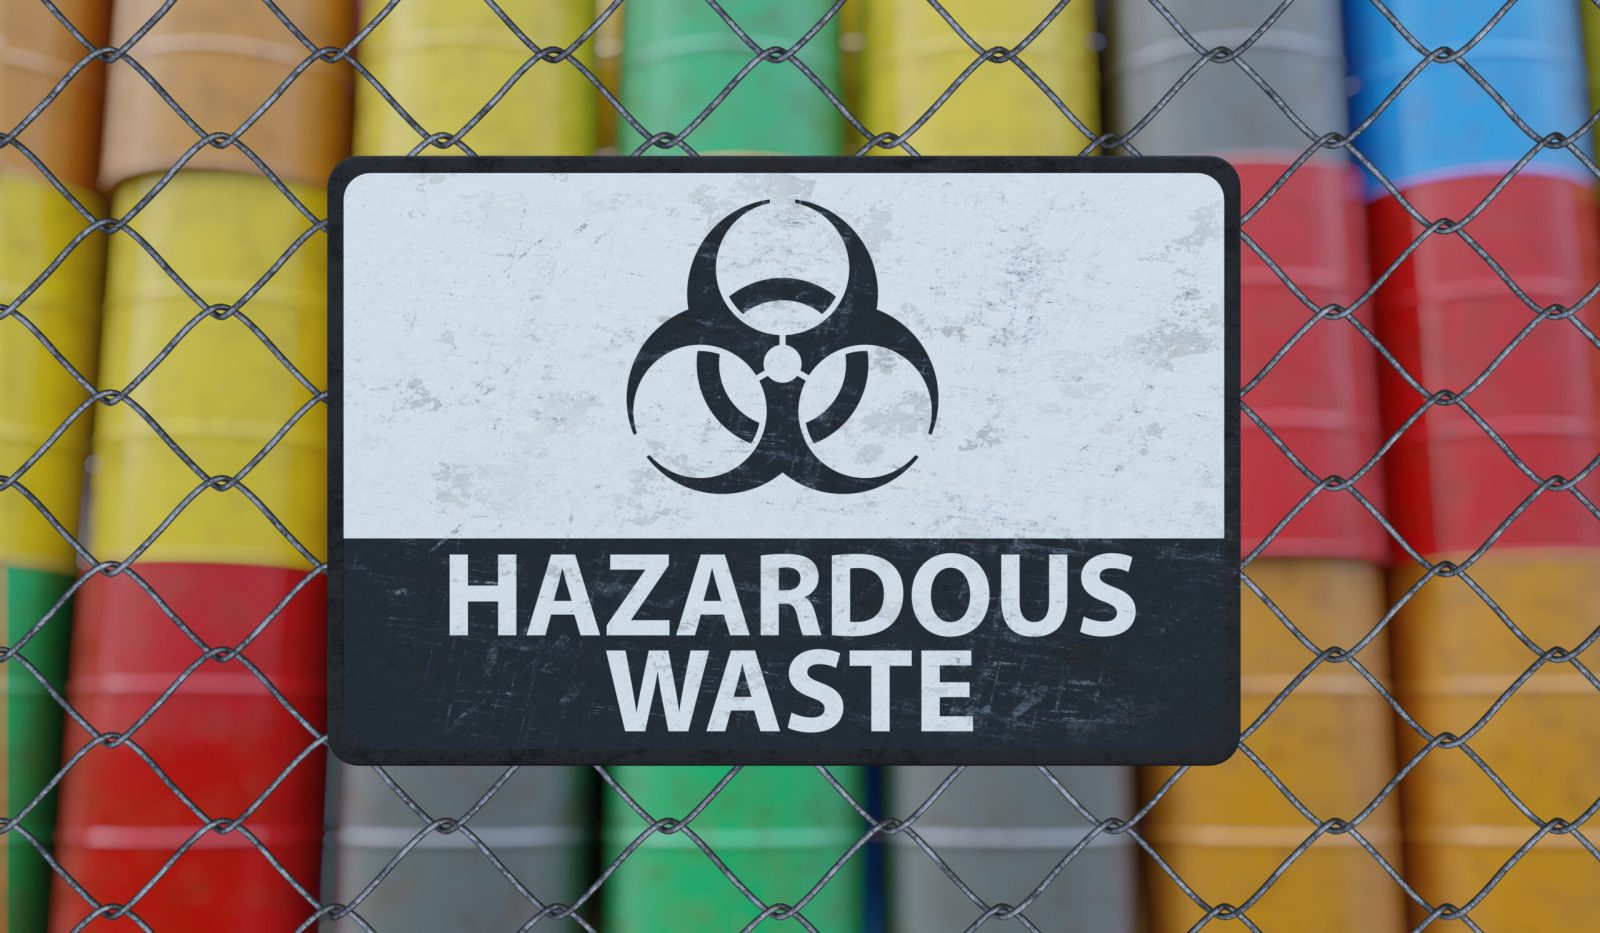 Hazardous waste sign on chain link fence. Oil barrels in background. 3D rendered illustration.